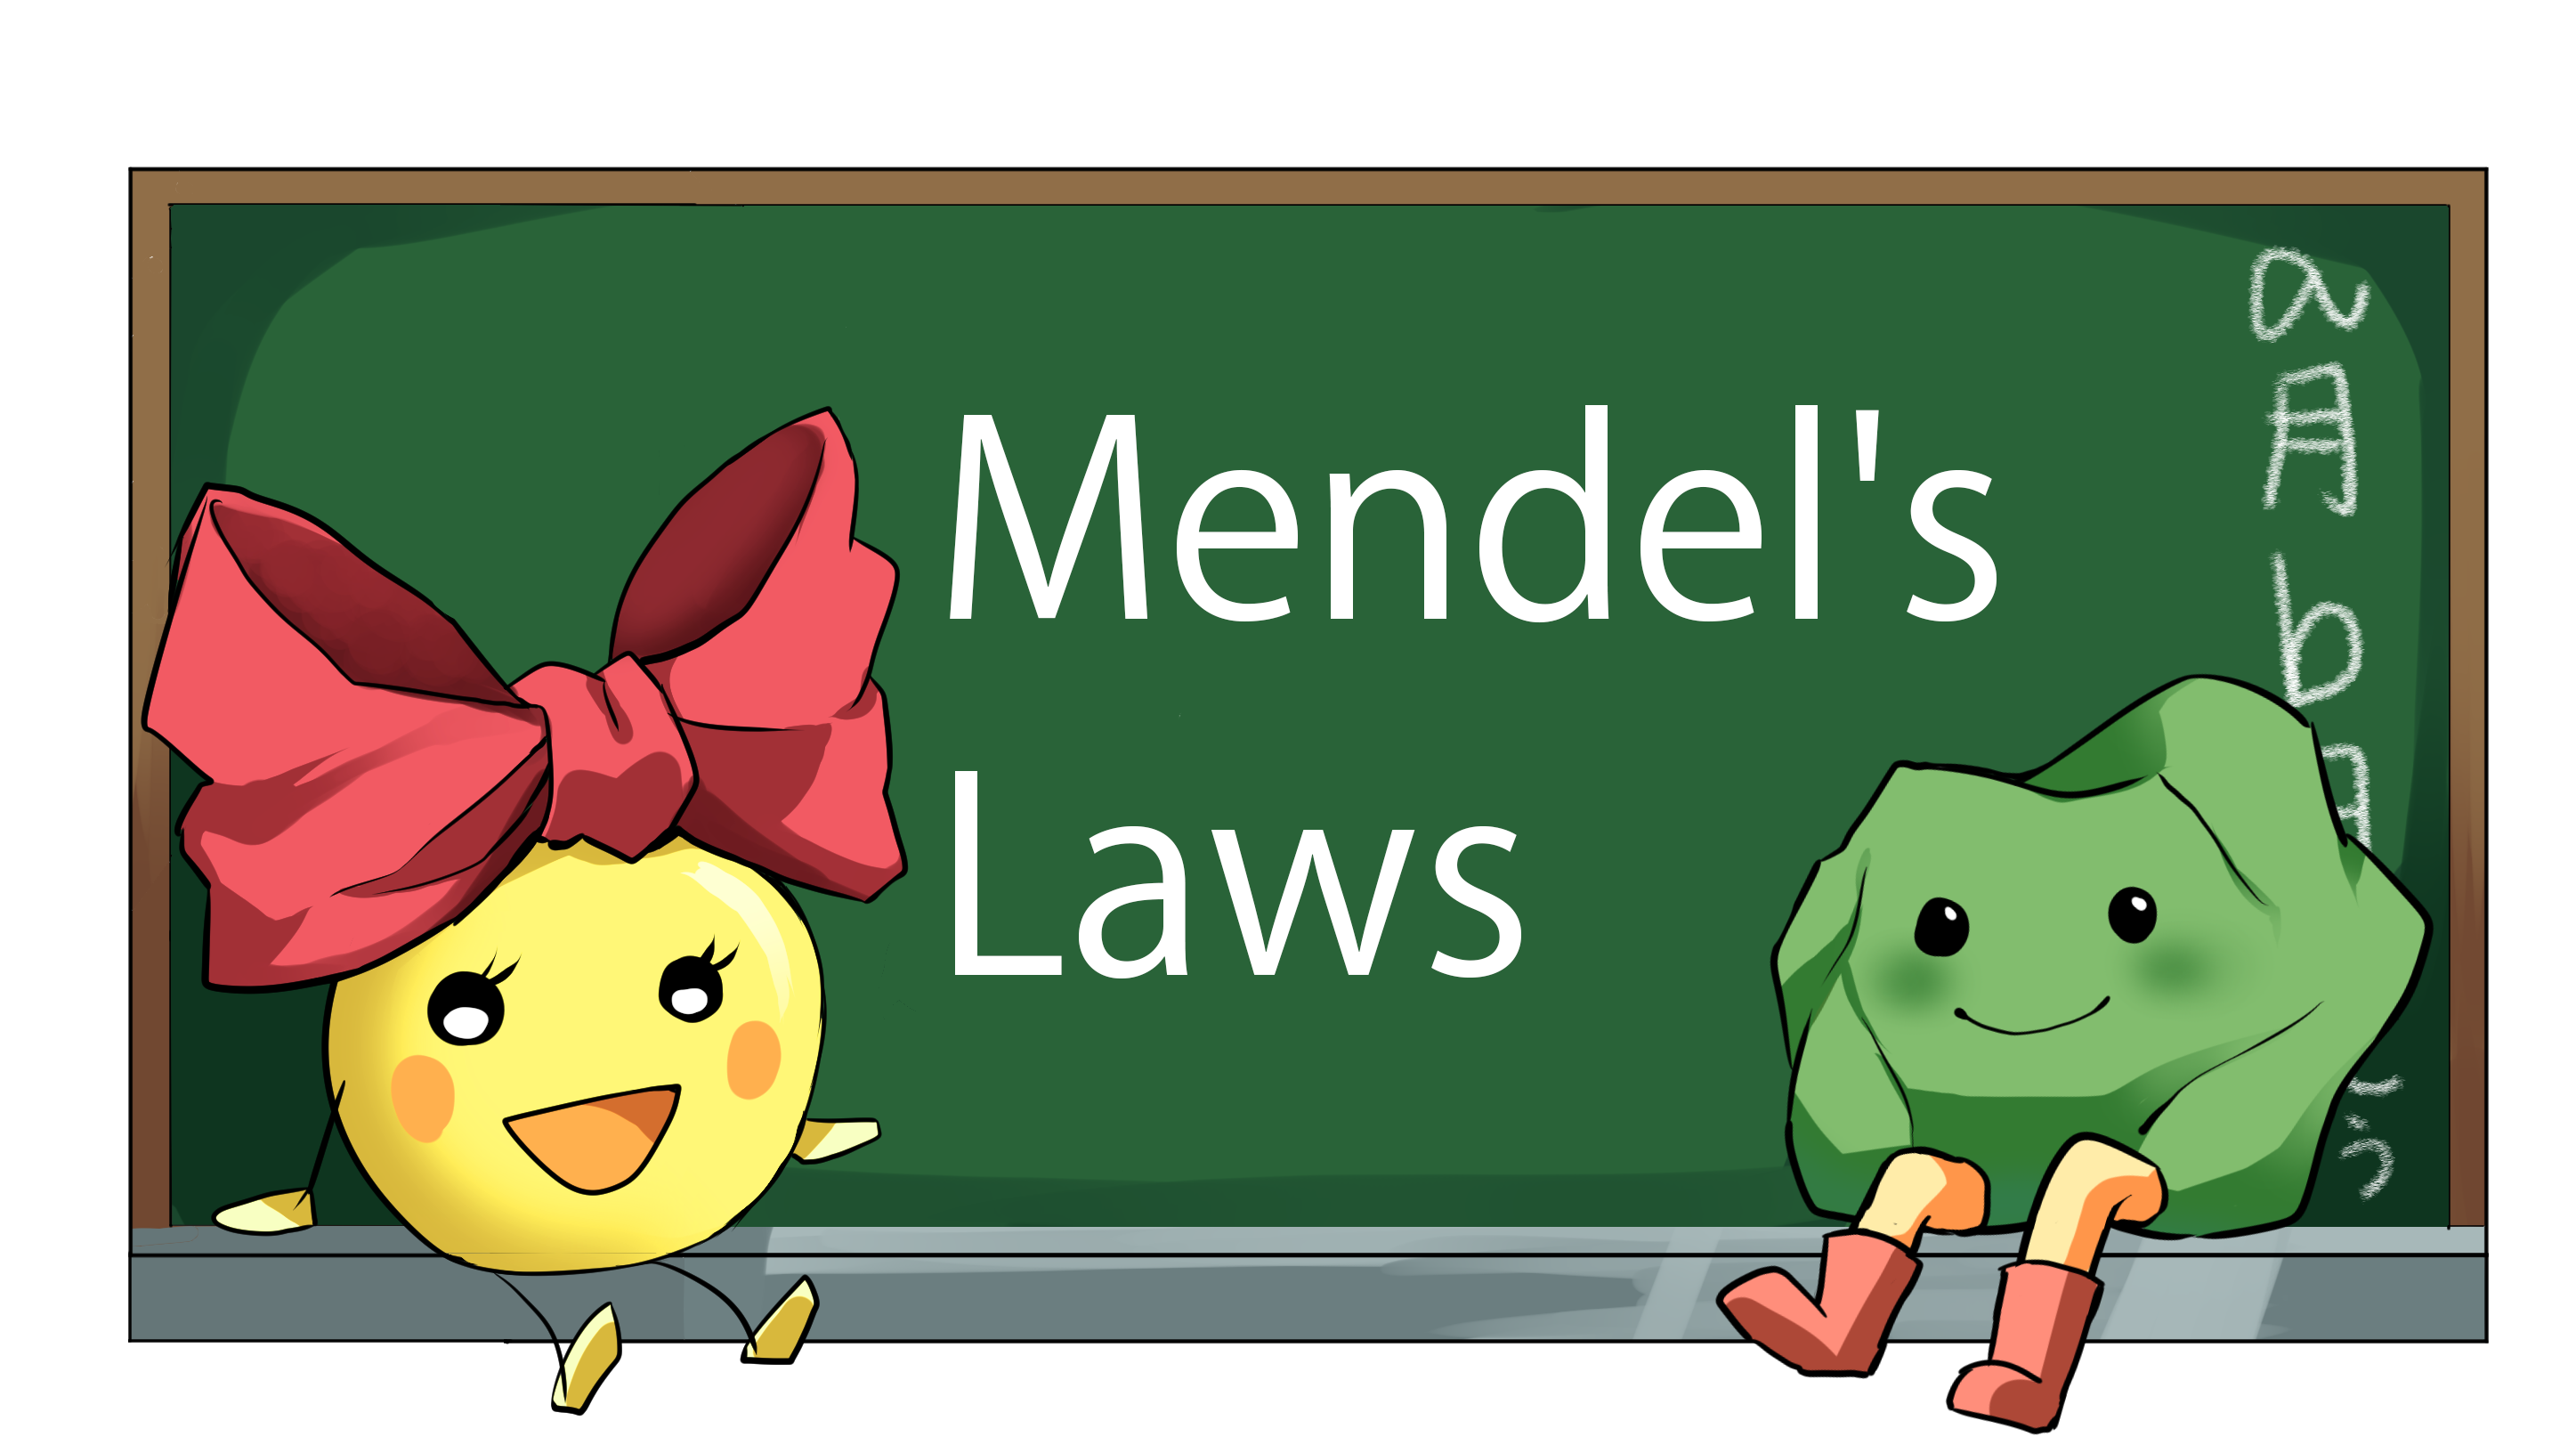 Mendel's Laws